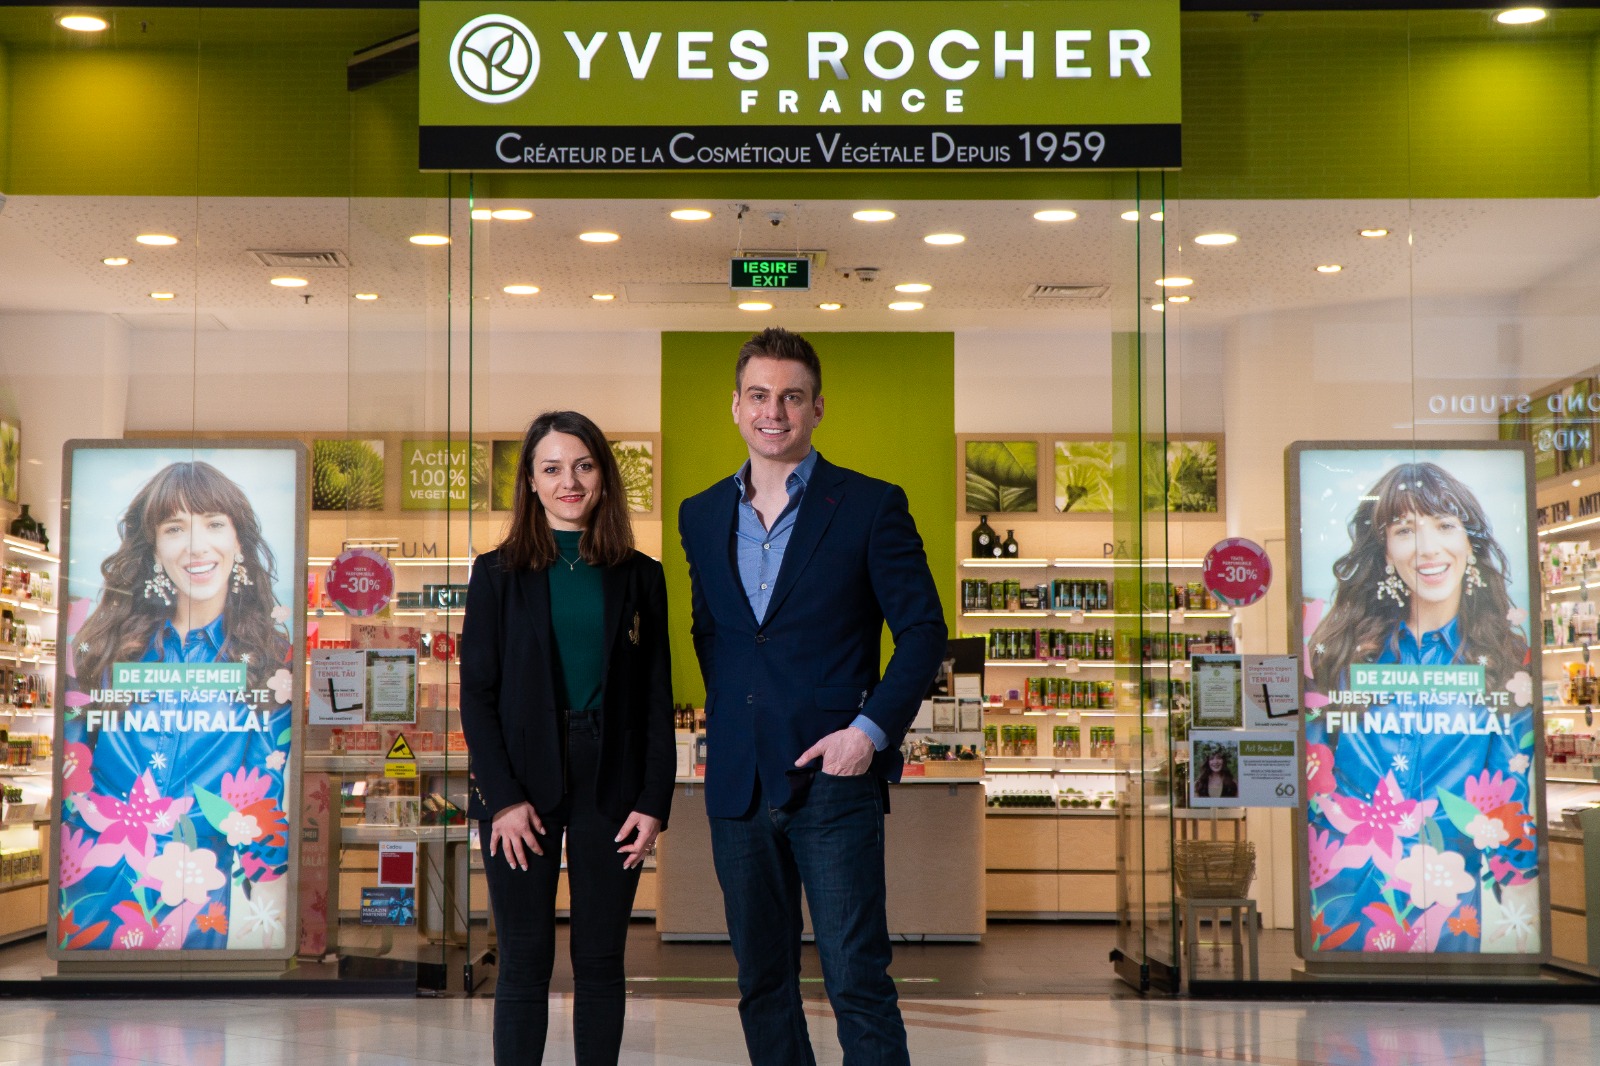 Startup-ul românesc colaborează cu Yvest Rocher pentru a combate risipa în retailul cosmetic